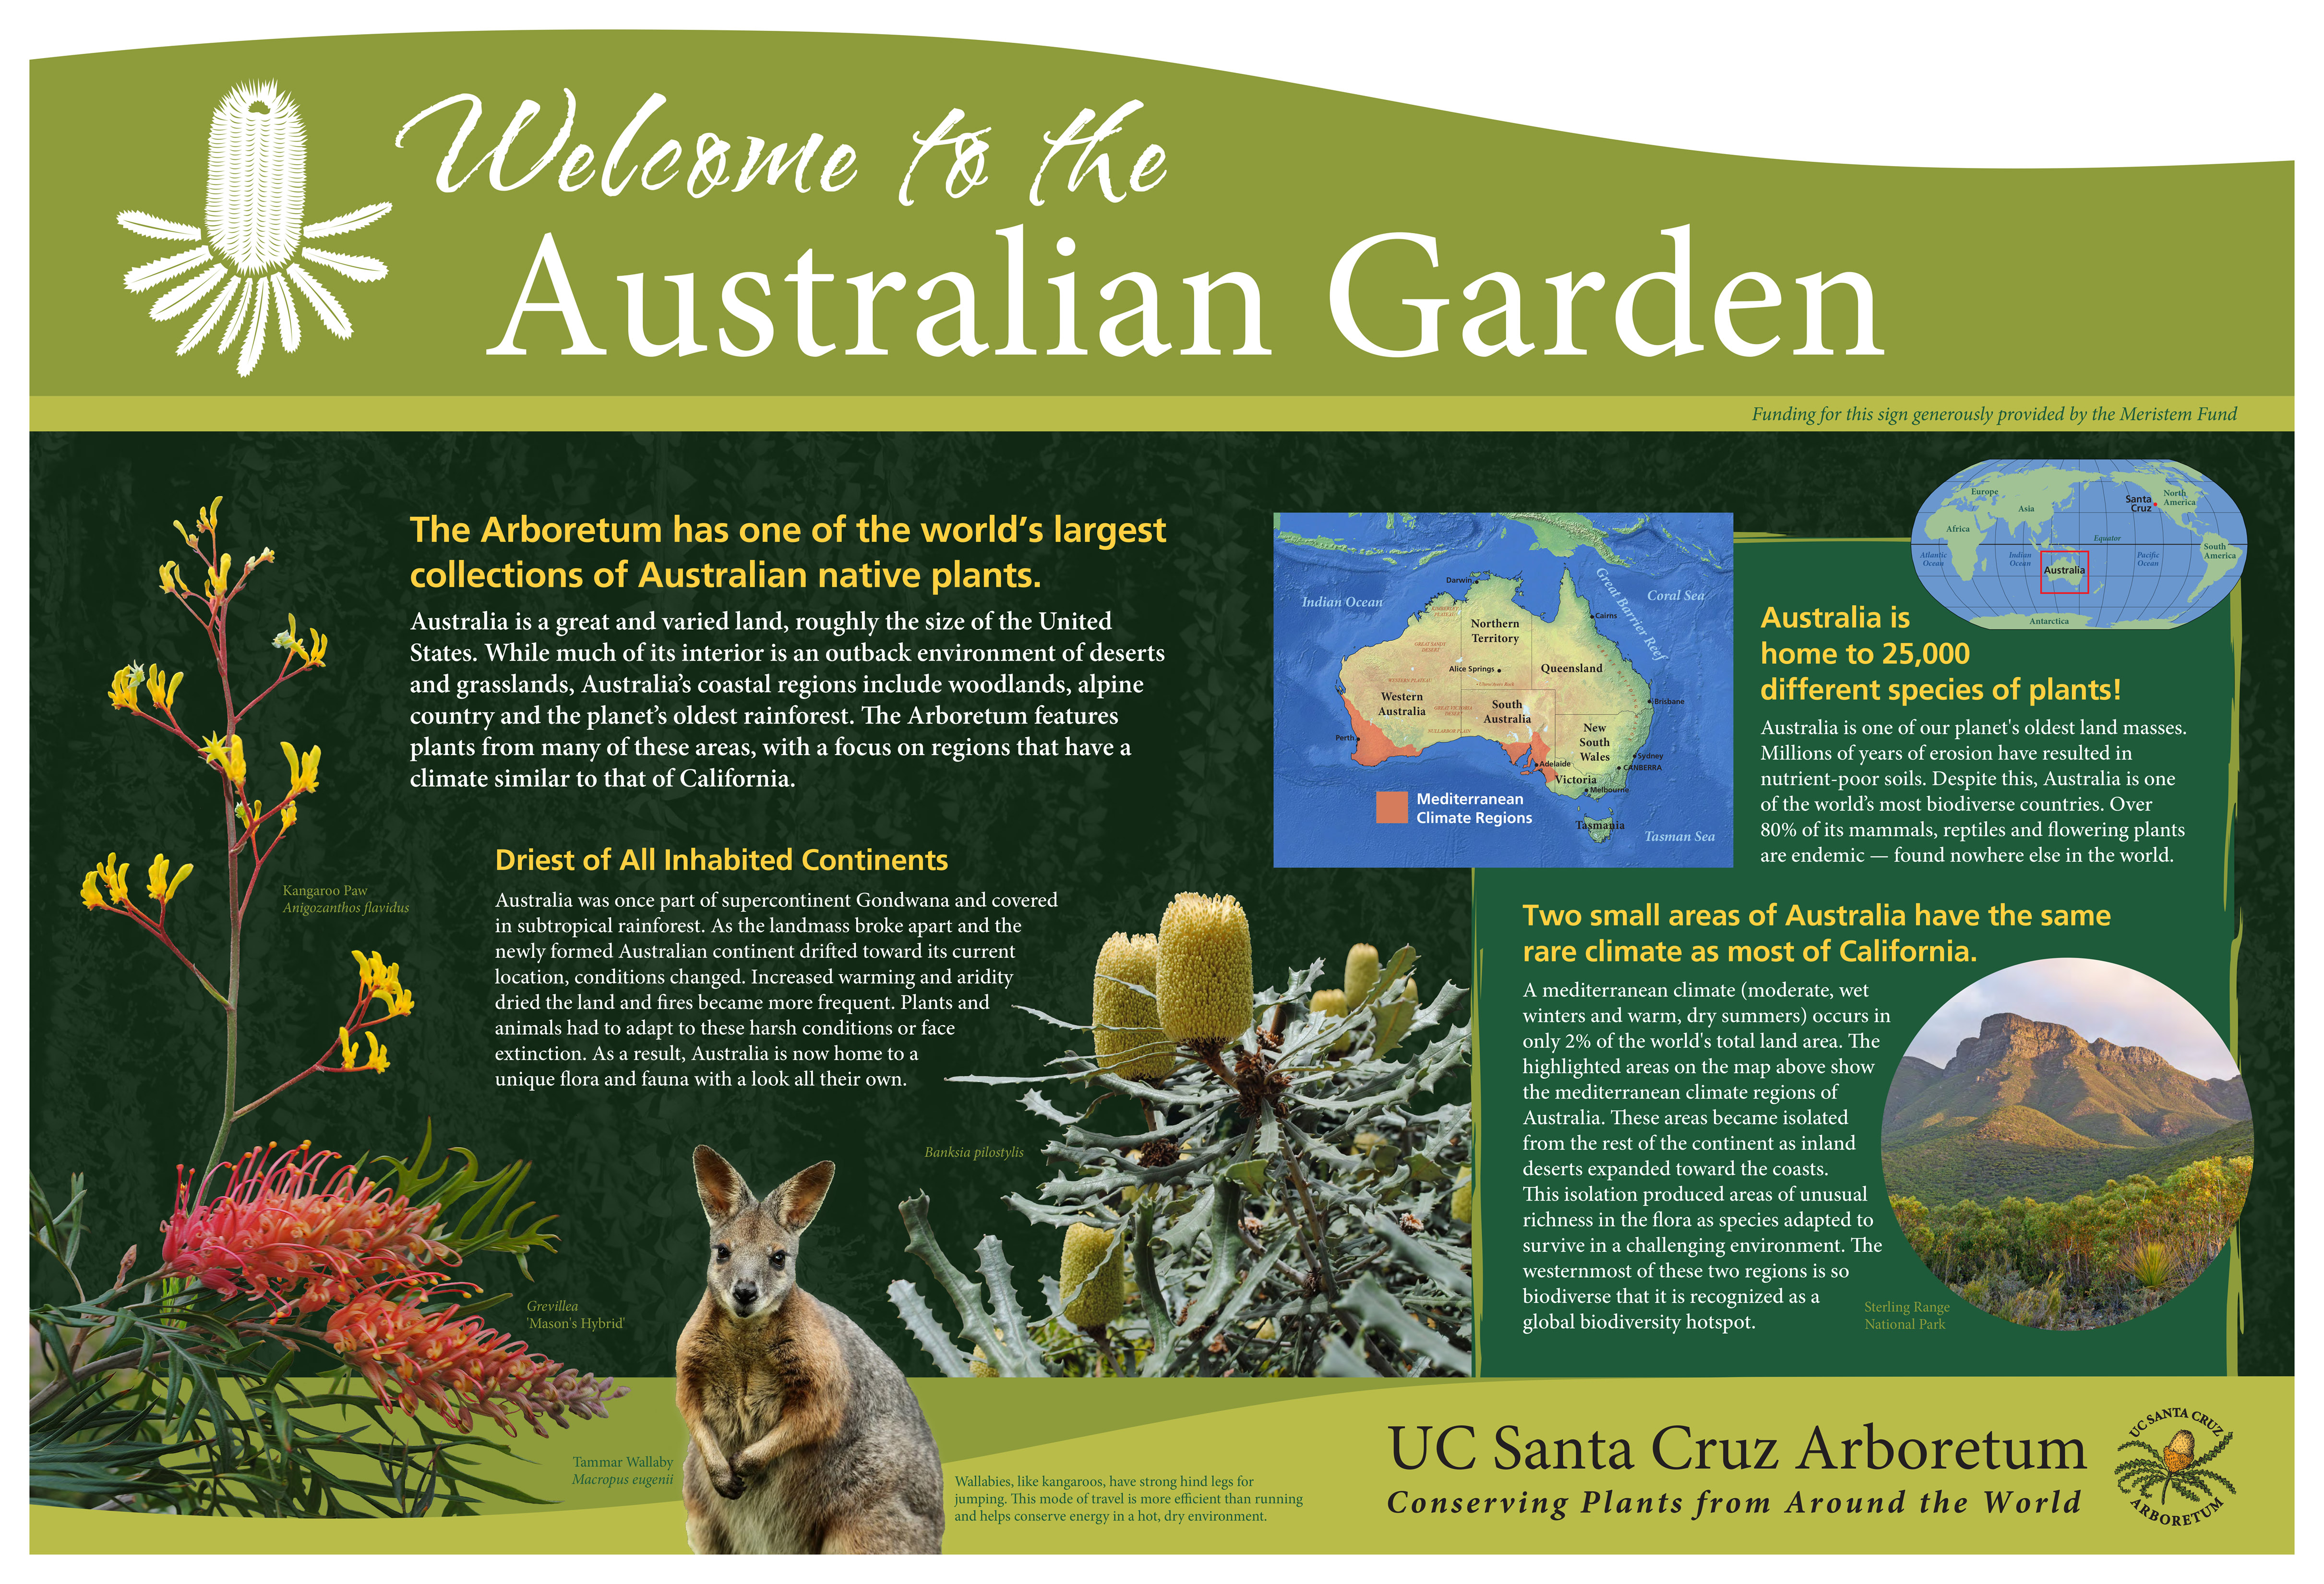 8-ucsc-arboretum_australia-garden-sign.jpg